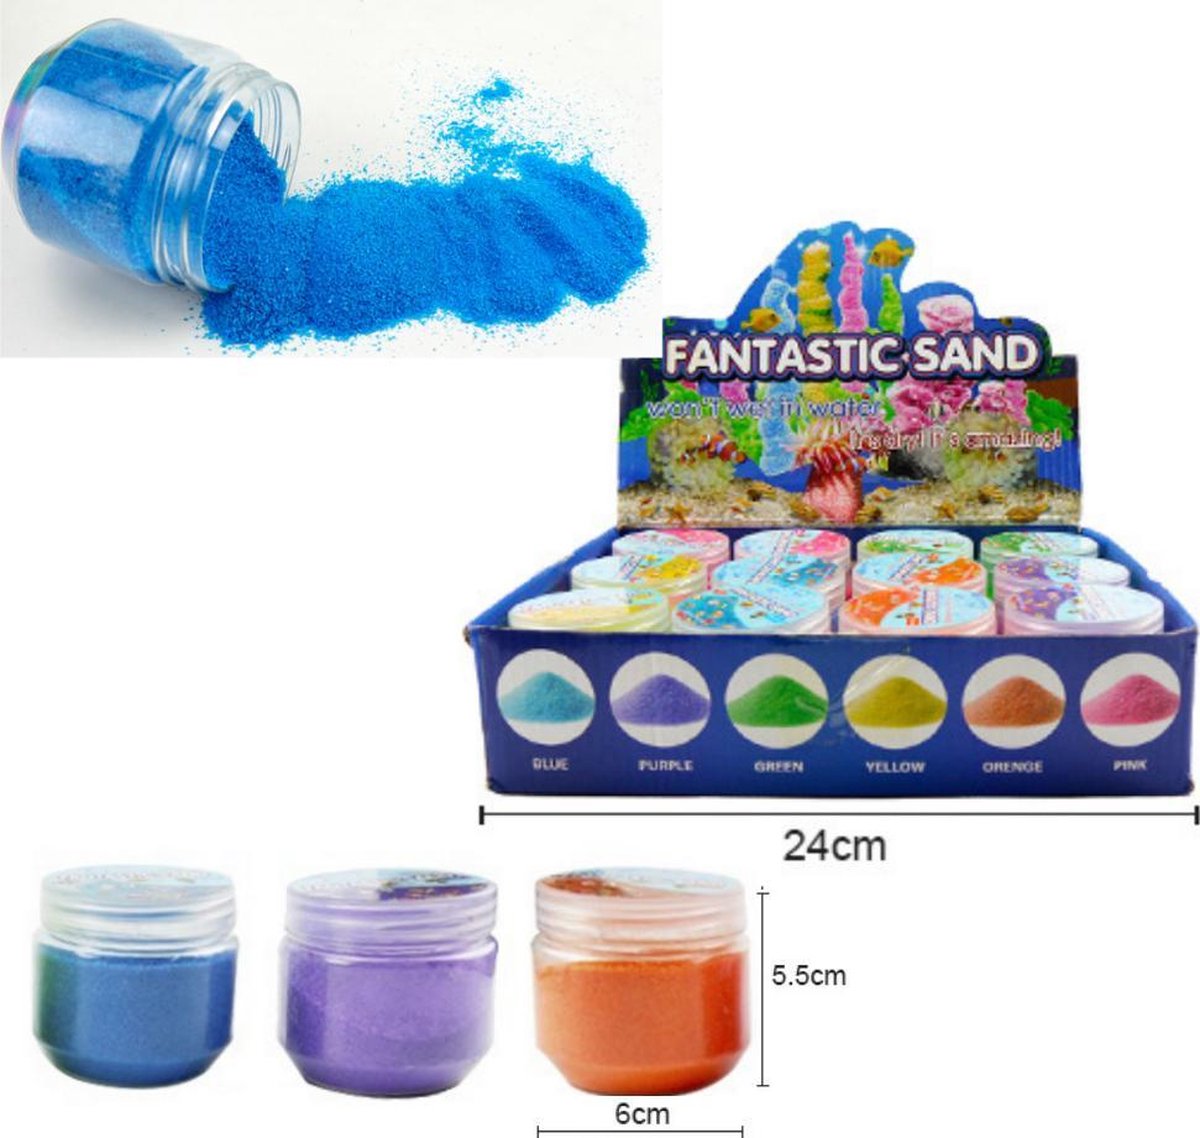 Speelzand - Hydrofoob Zand - Magic Sand - Sand - Zand Dat Niet Nat wordt - In 3 Kleuren - Blauw - Paars - Oranje - 107 Gram - Speelgoed Zand Creatief - Fantastic Sand - Speelgoed Voor Kinderen